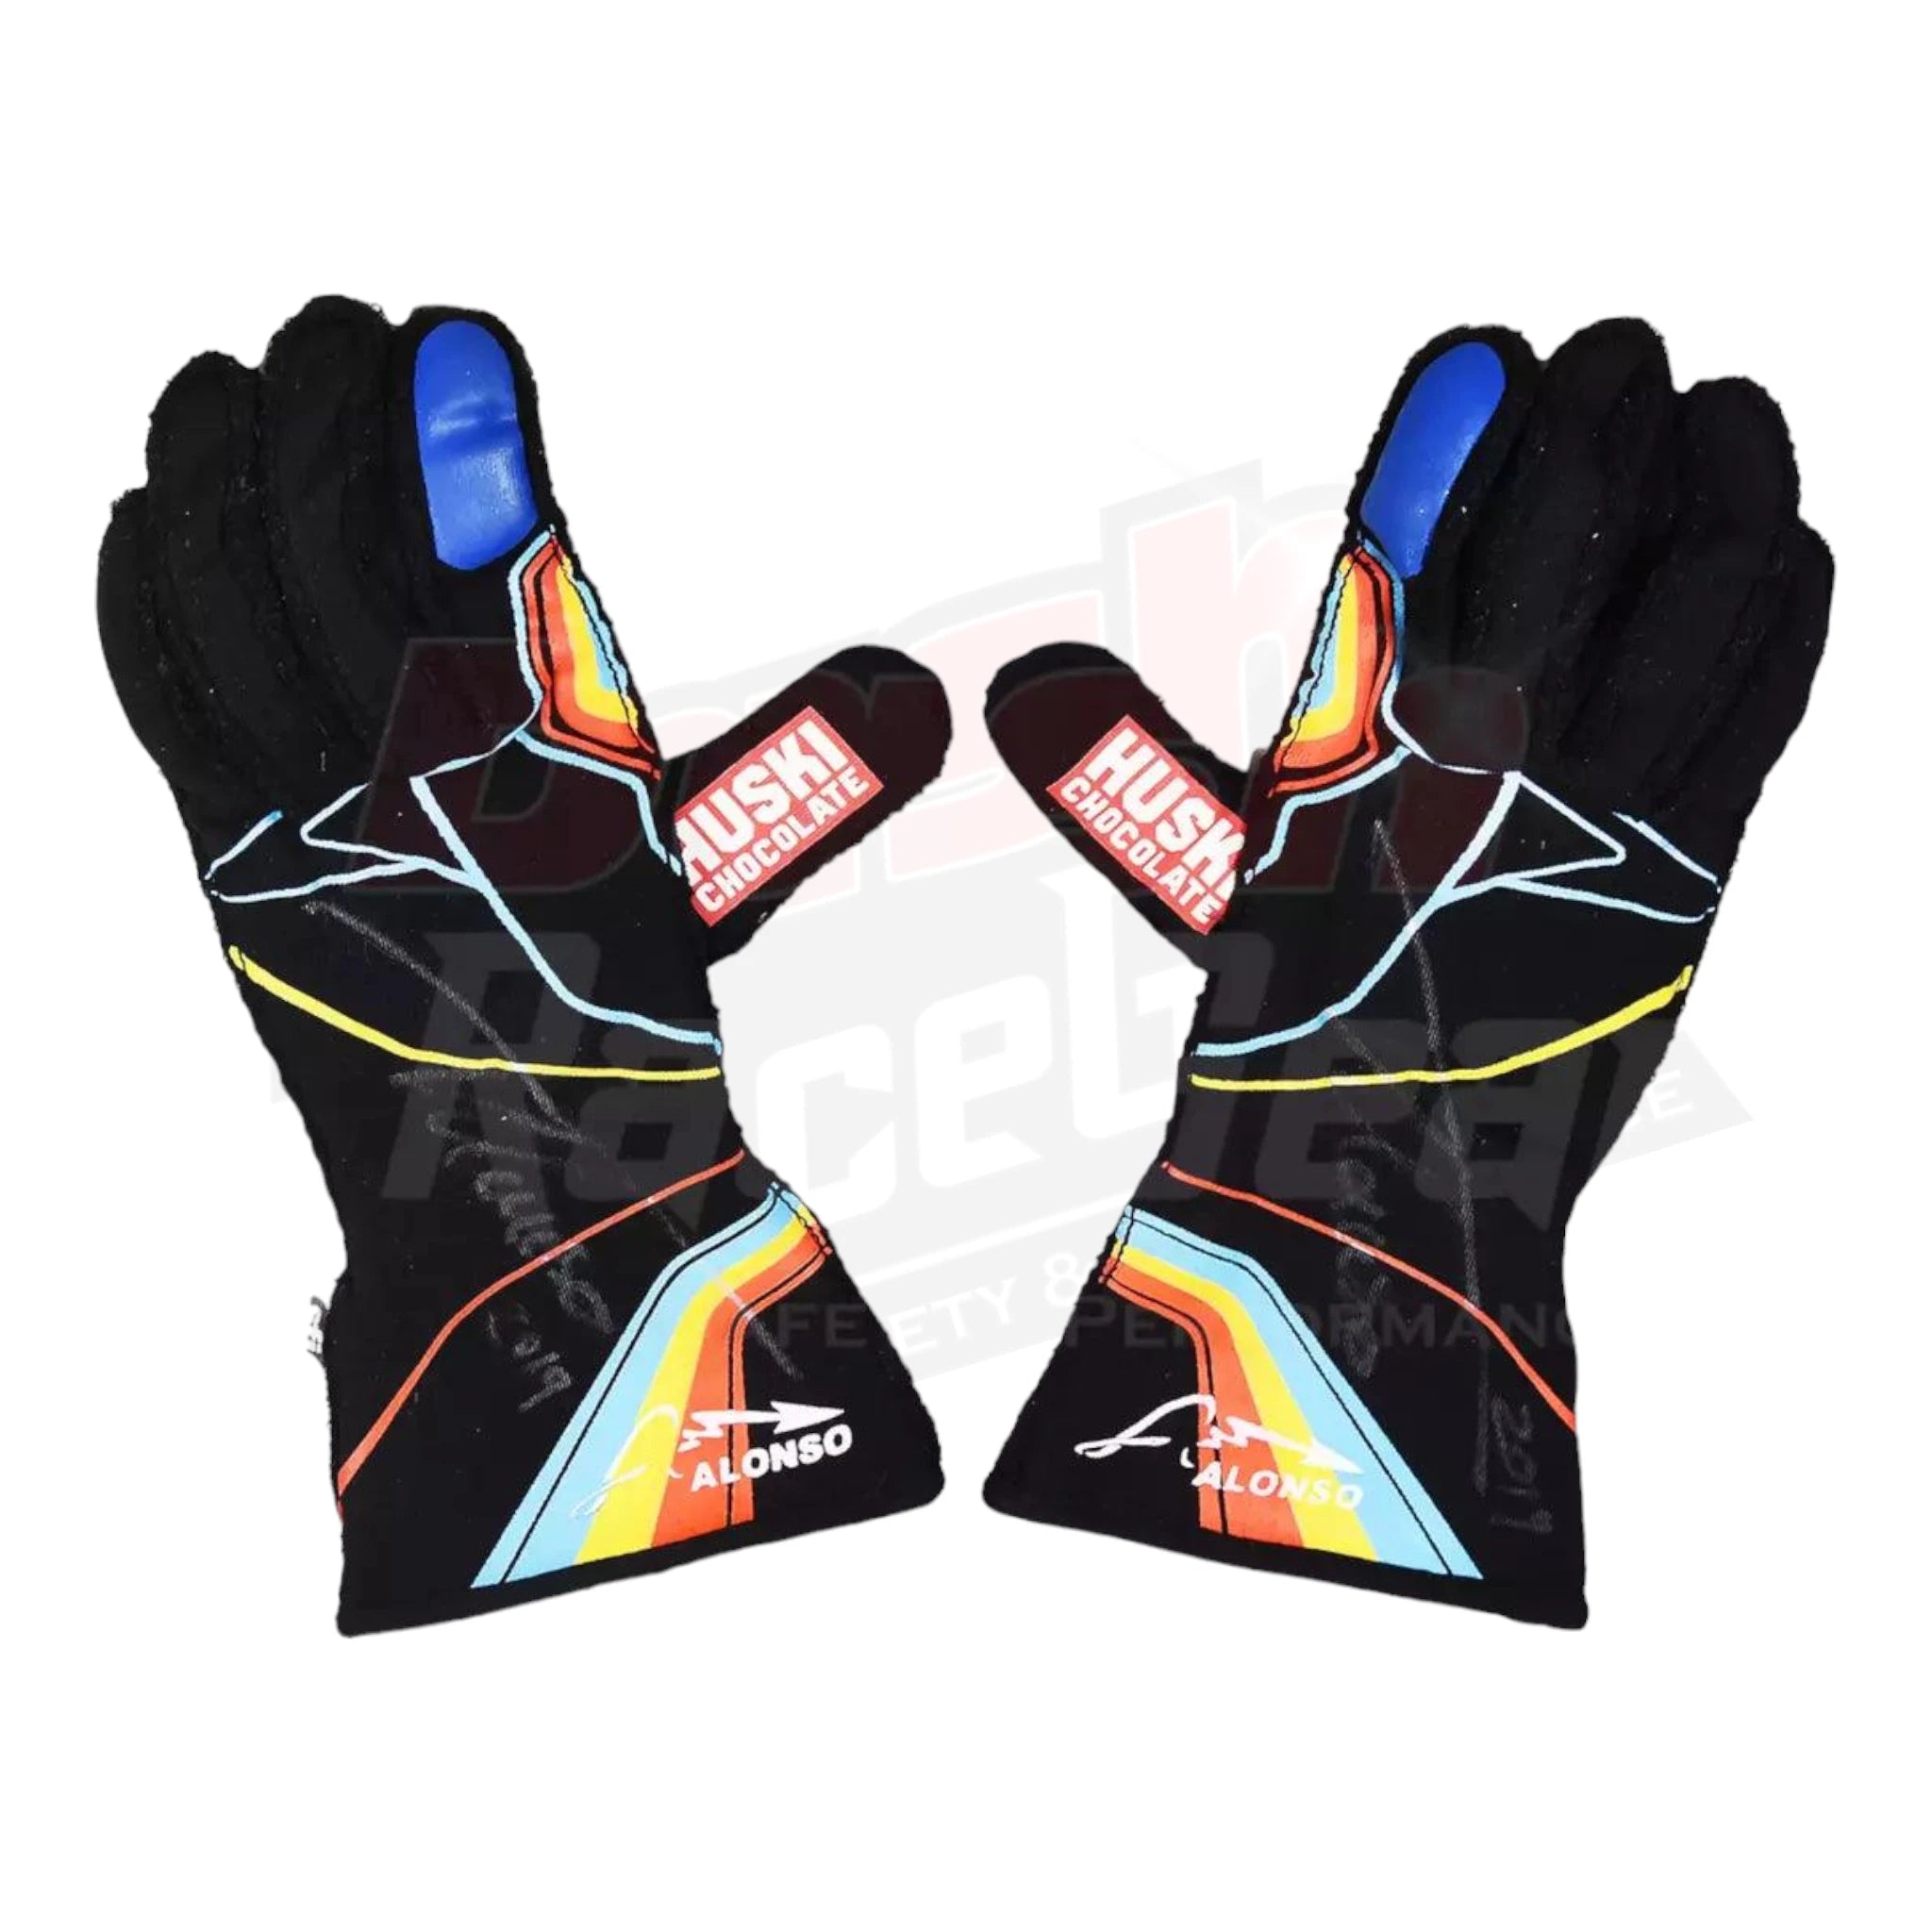 2019 Fernando Alonso Indy 500 McLaren F1 Gloves